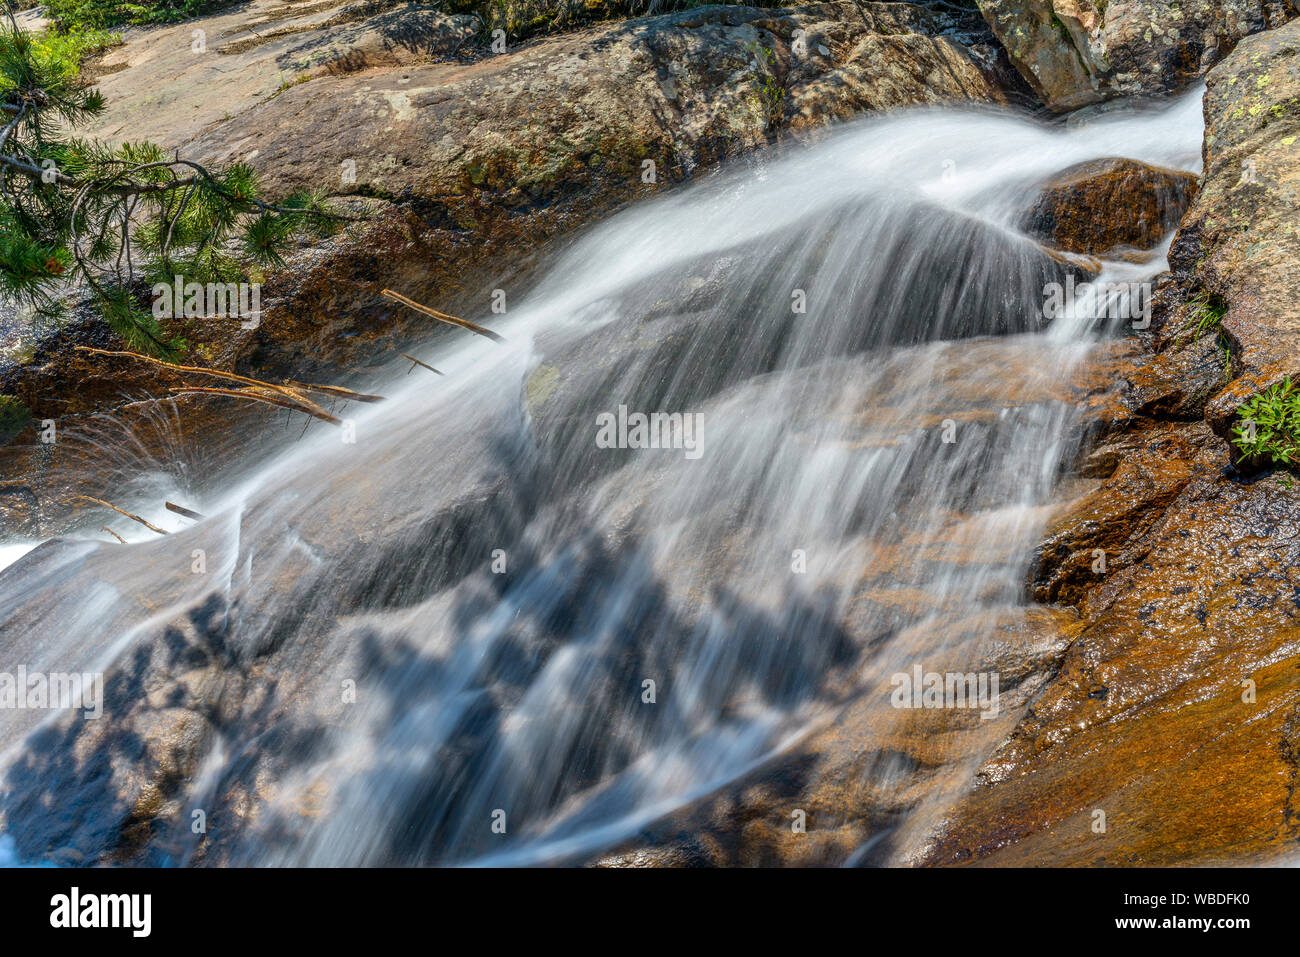 Velo di acqua - Estate creek colata di un sottile strato di velo di acqua di monte in superficie di roccia. Fall River, Rocky Mountain National Park, CO, Stati Uniti d'America. Foto Stock